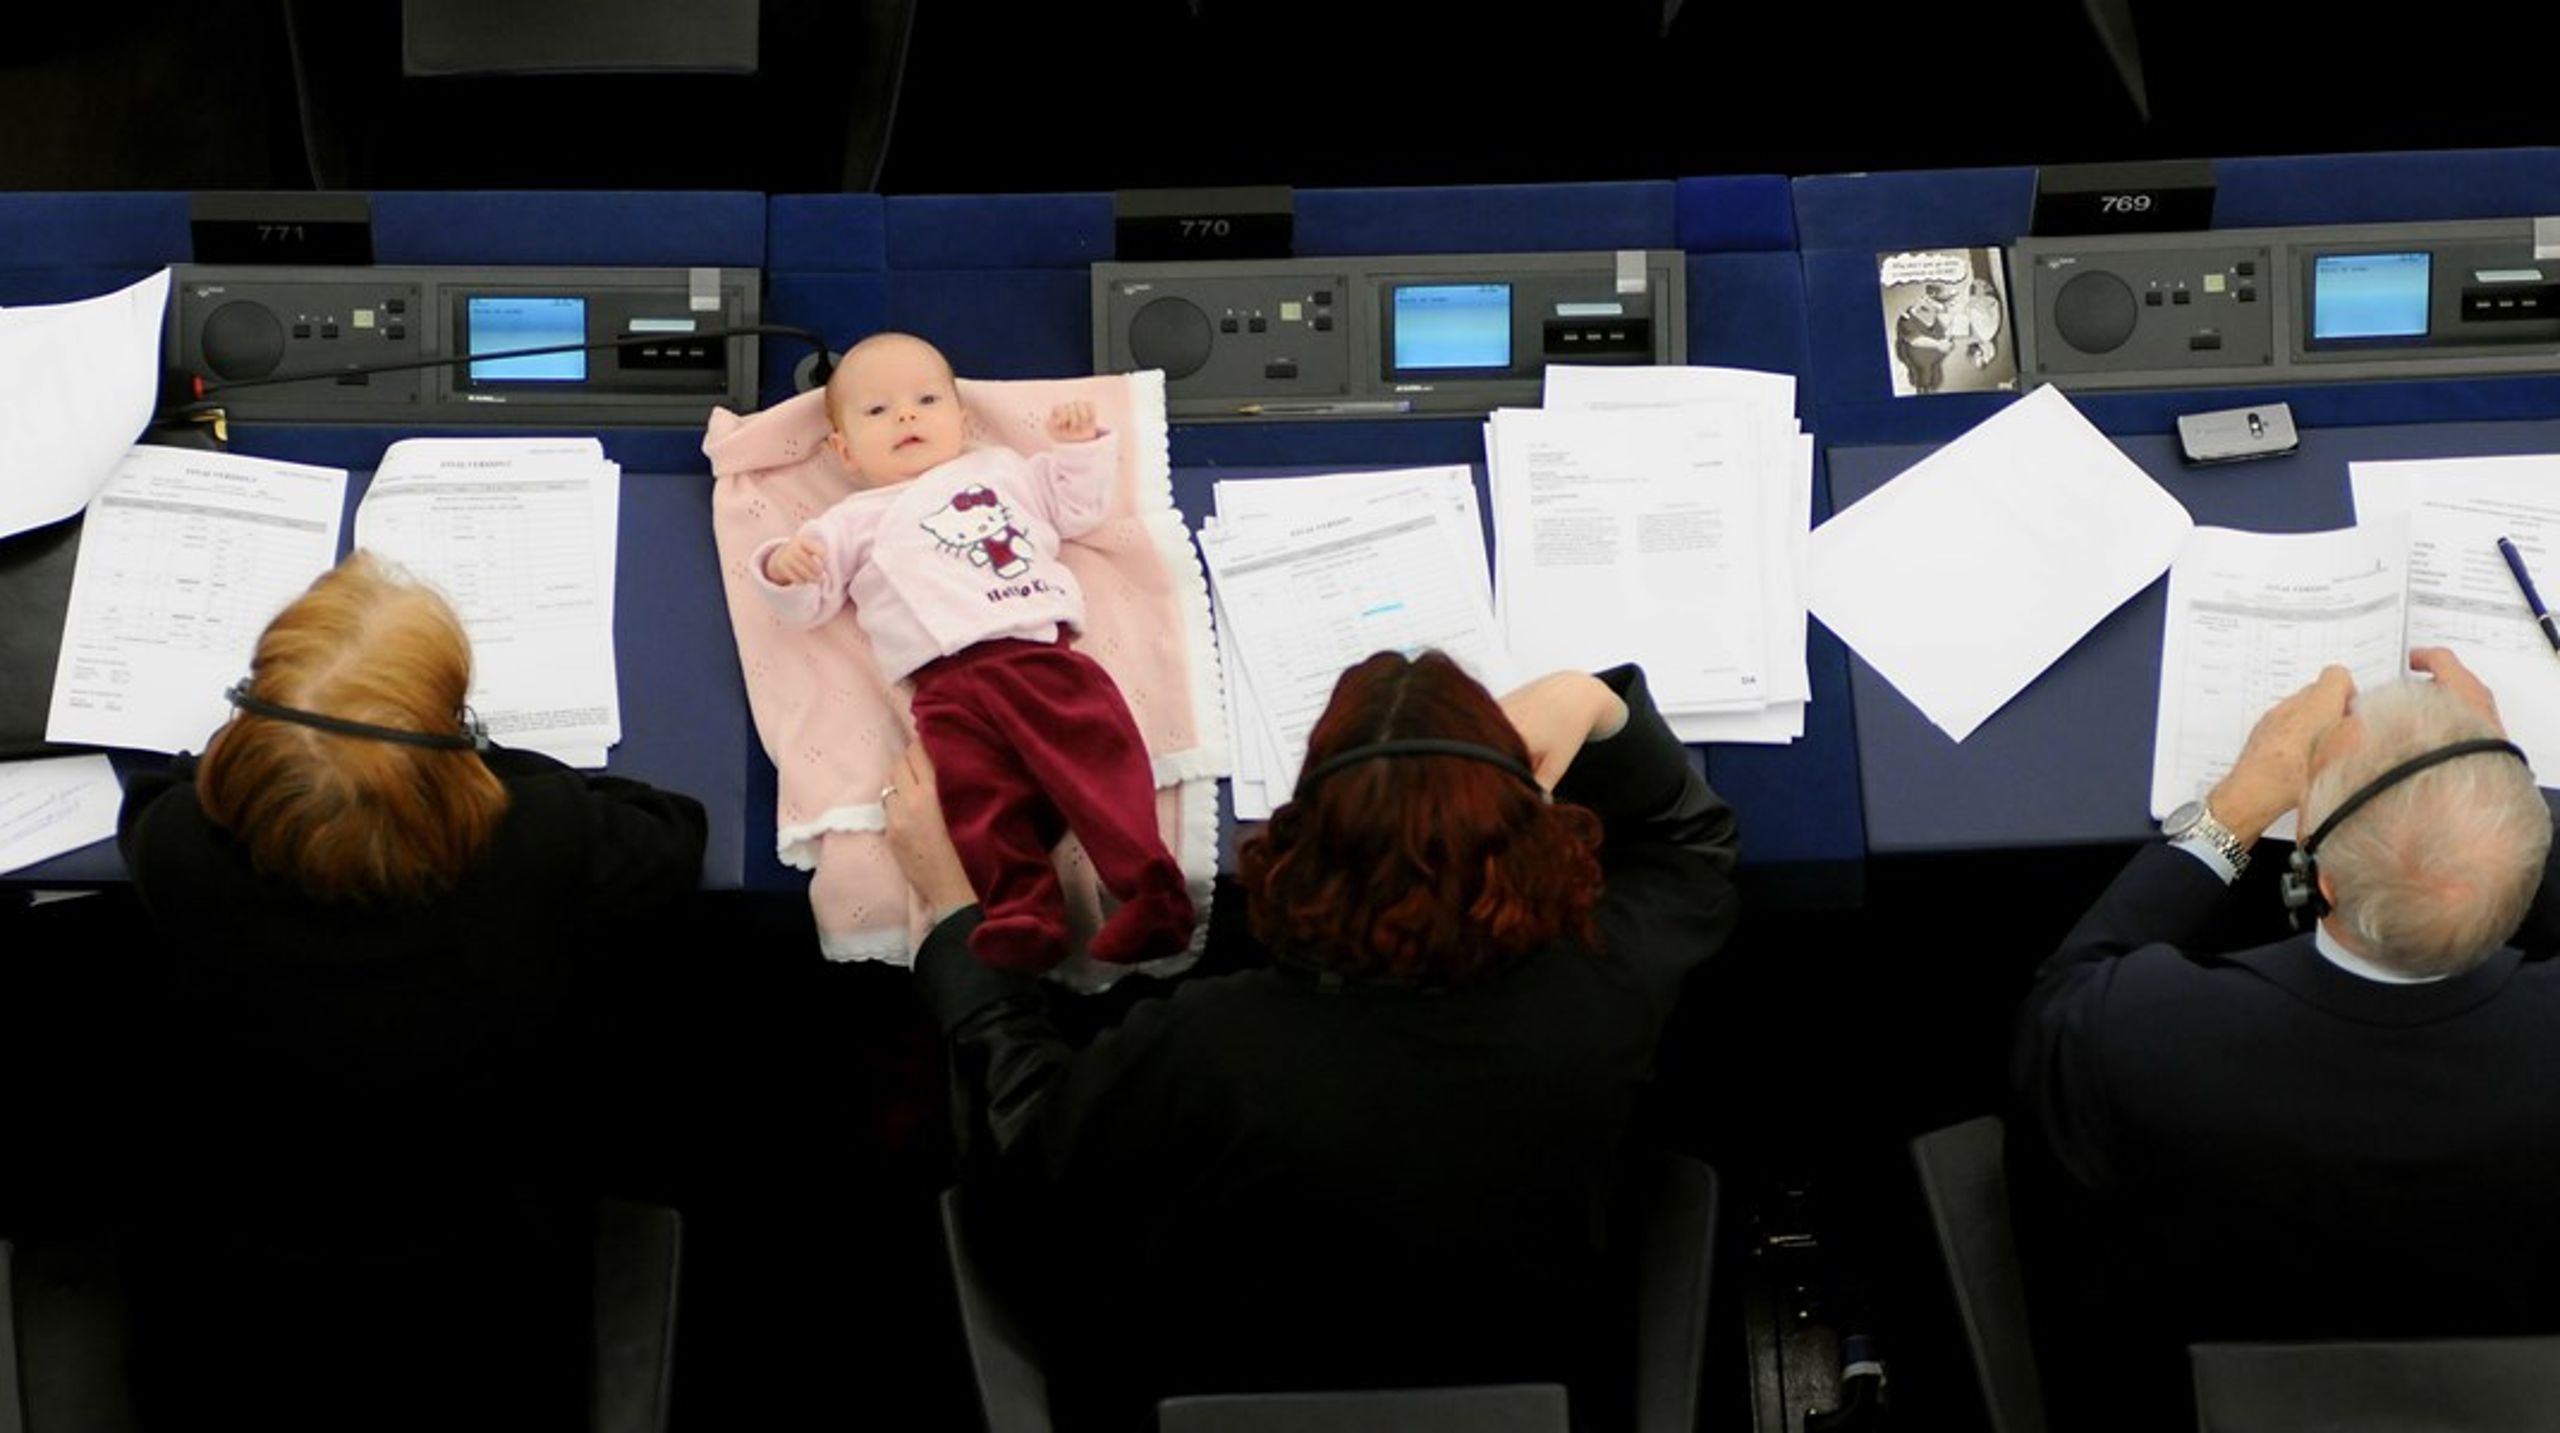 Press på kvinnliga parlamentariker. Den&nbsp;danska EU-parlamentarikern Hanne Dahl tog med sin nyfödda bebis&nbsp;under omröstning 2009 för att hennes röst inte skulle gå förlorad – "Mamma har inte tid för mammaledighet" blev rubriken i danska tidningen&nbsp;Politiken.&nbsp;